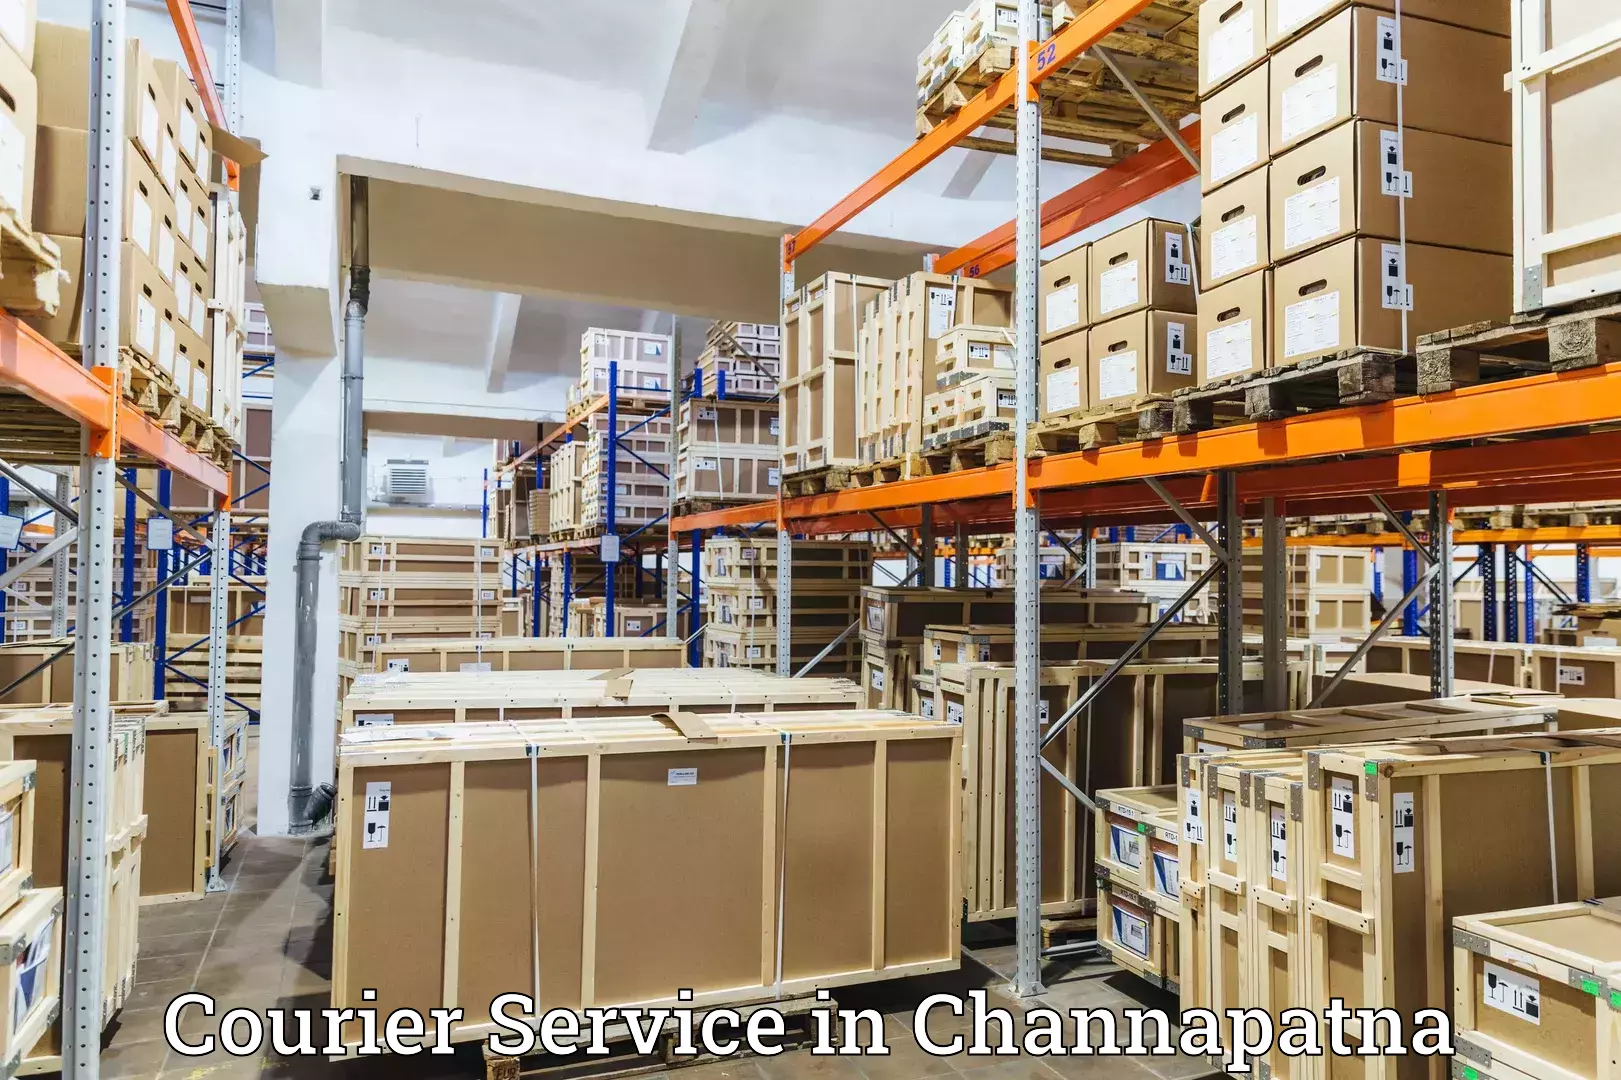 Comprehensive logistics in Channapatna